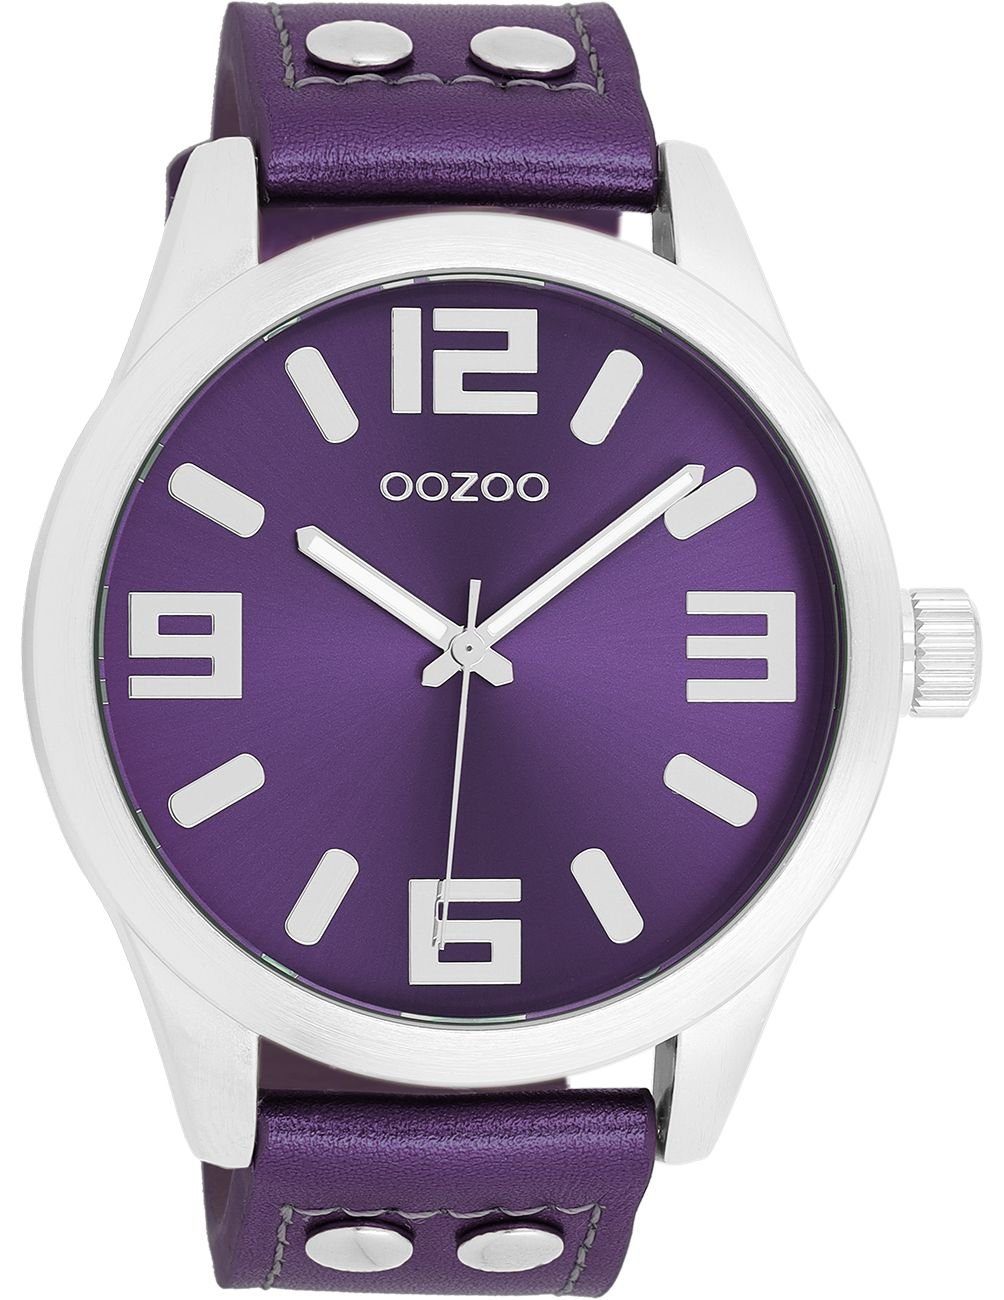 OOZOO Quarzuhr Basic Line Uhr C1080 Lederband Metallic Purple 46 mm